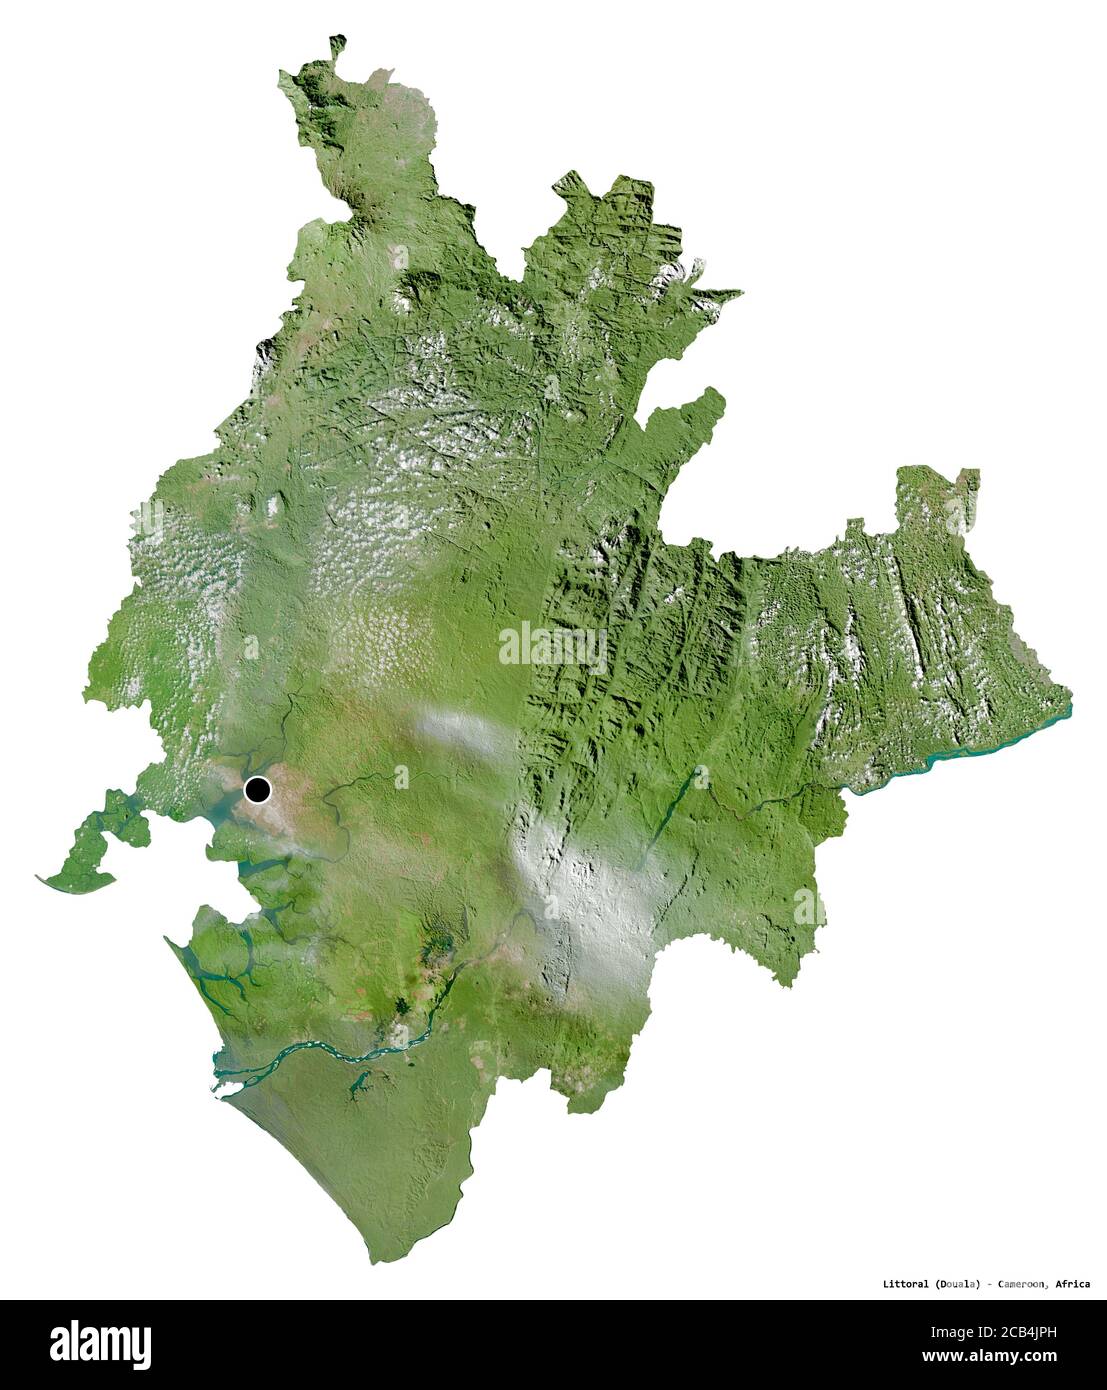 Forme du littoral, région du Cameroun, avec sa capitale isolée sur fond blanc. Imagerie satellite. Rendu 3D Banque D'Images